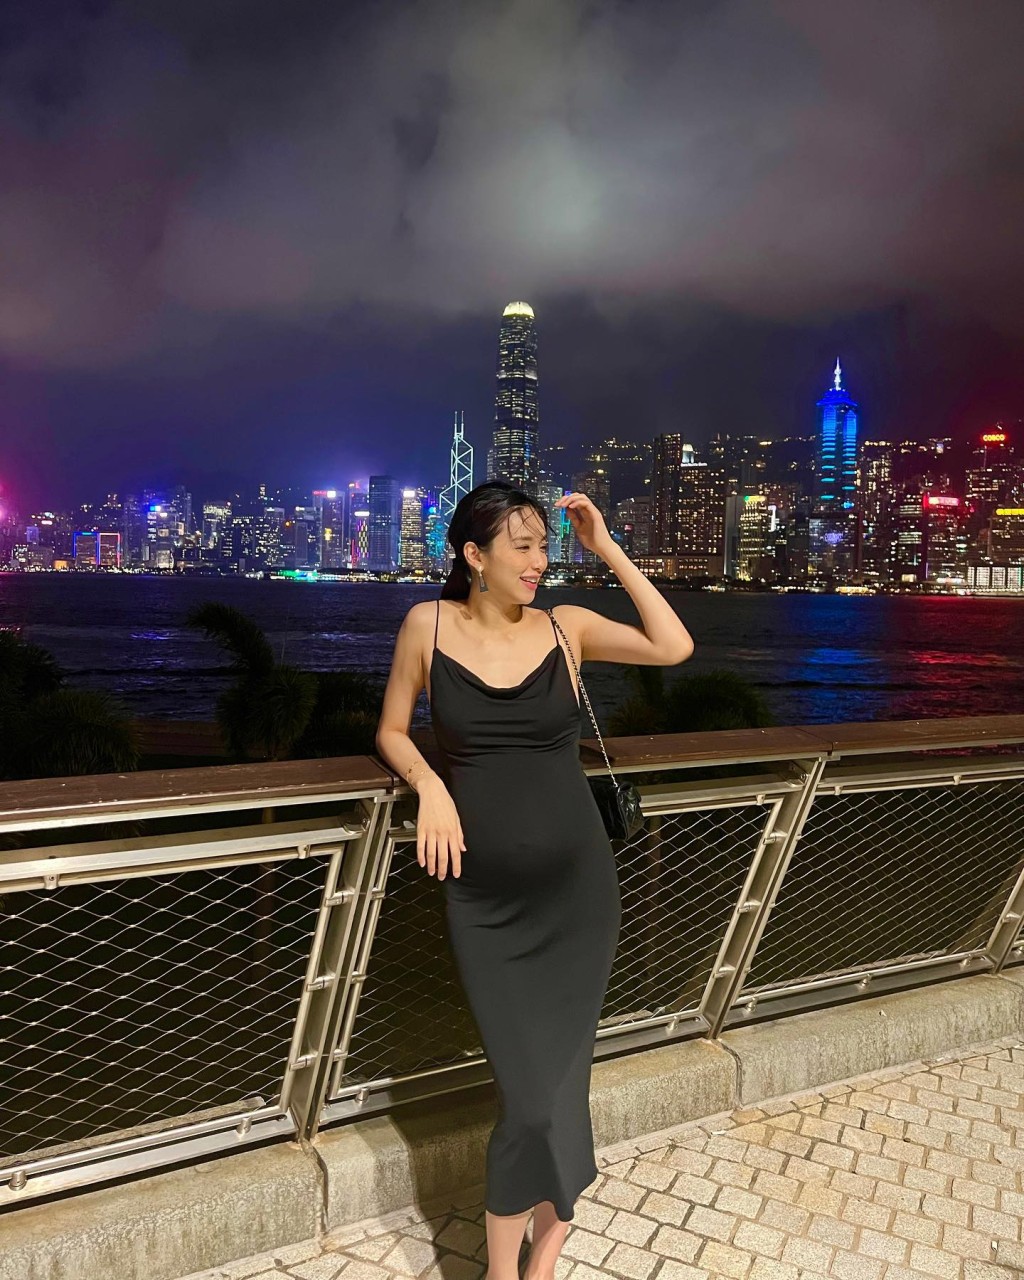 曾淑雅在IG晒出在維港夜景下拍攝的美照。